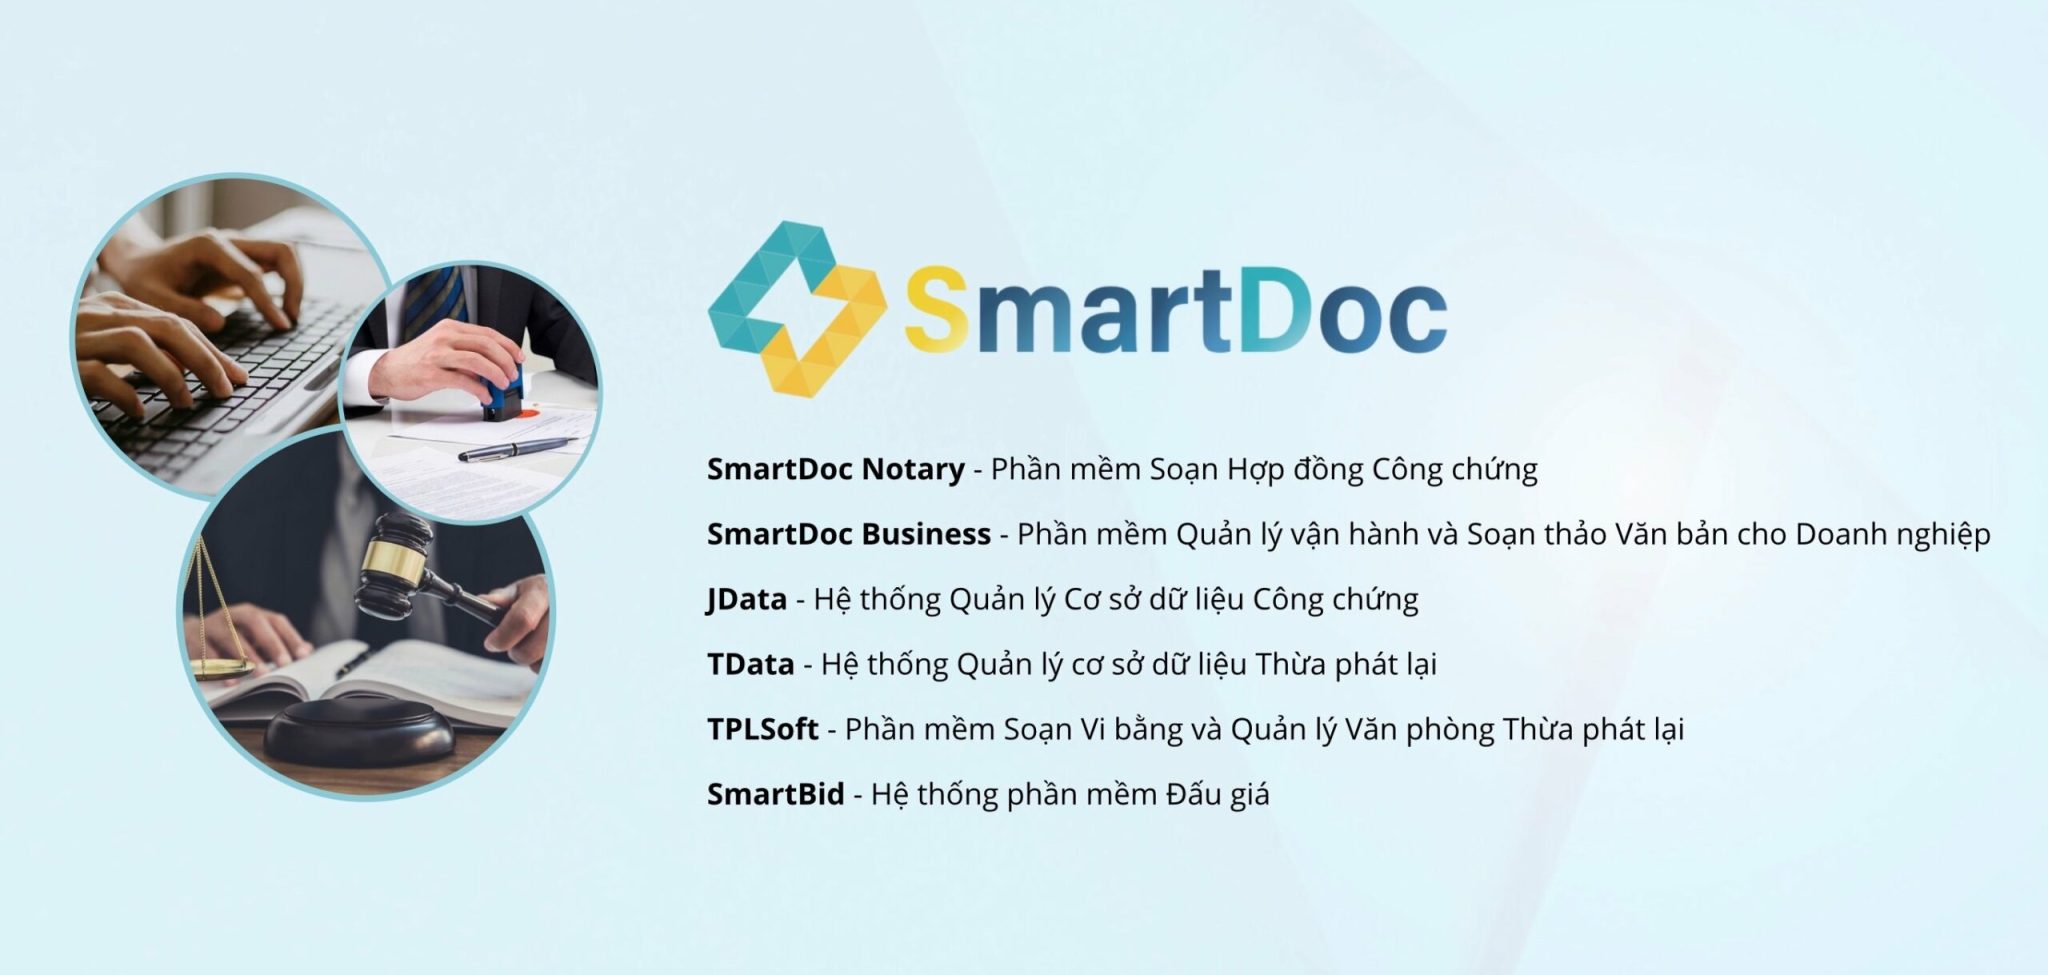 SmartDoc - Phần mềm Quản lý vận hành và Soạn thảo văn bản tốt nhất